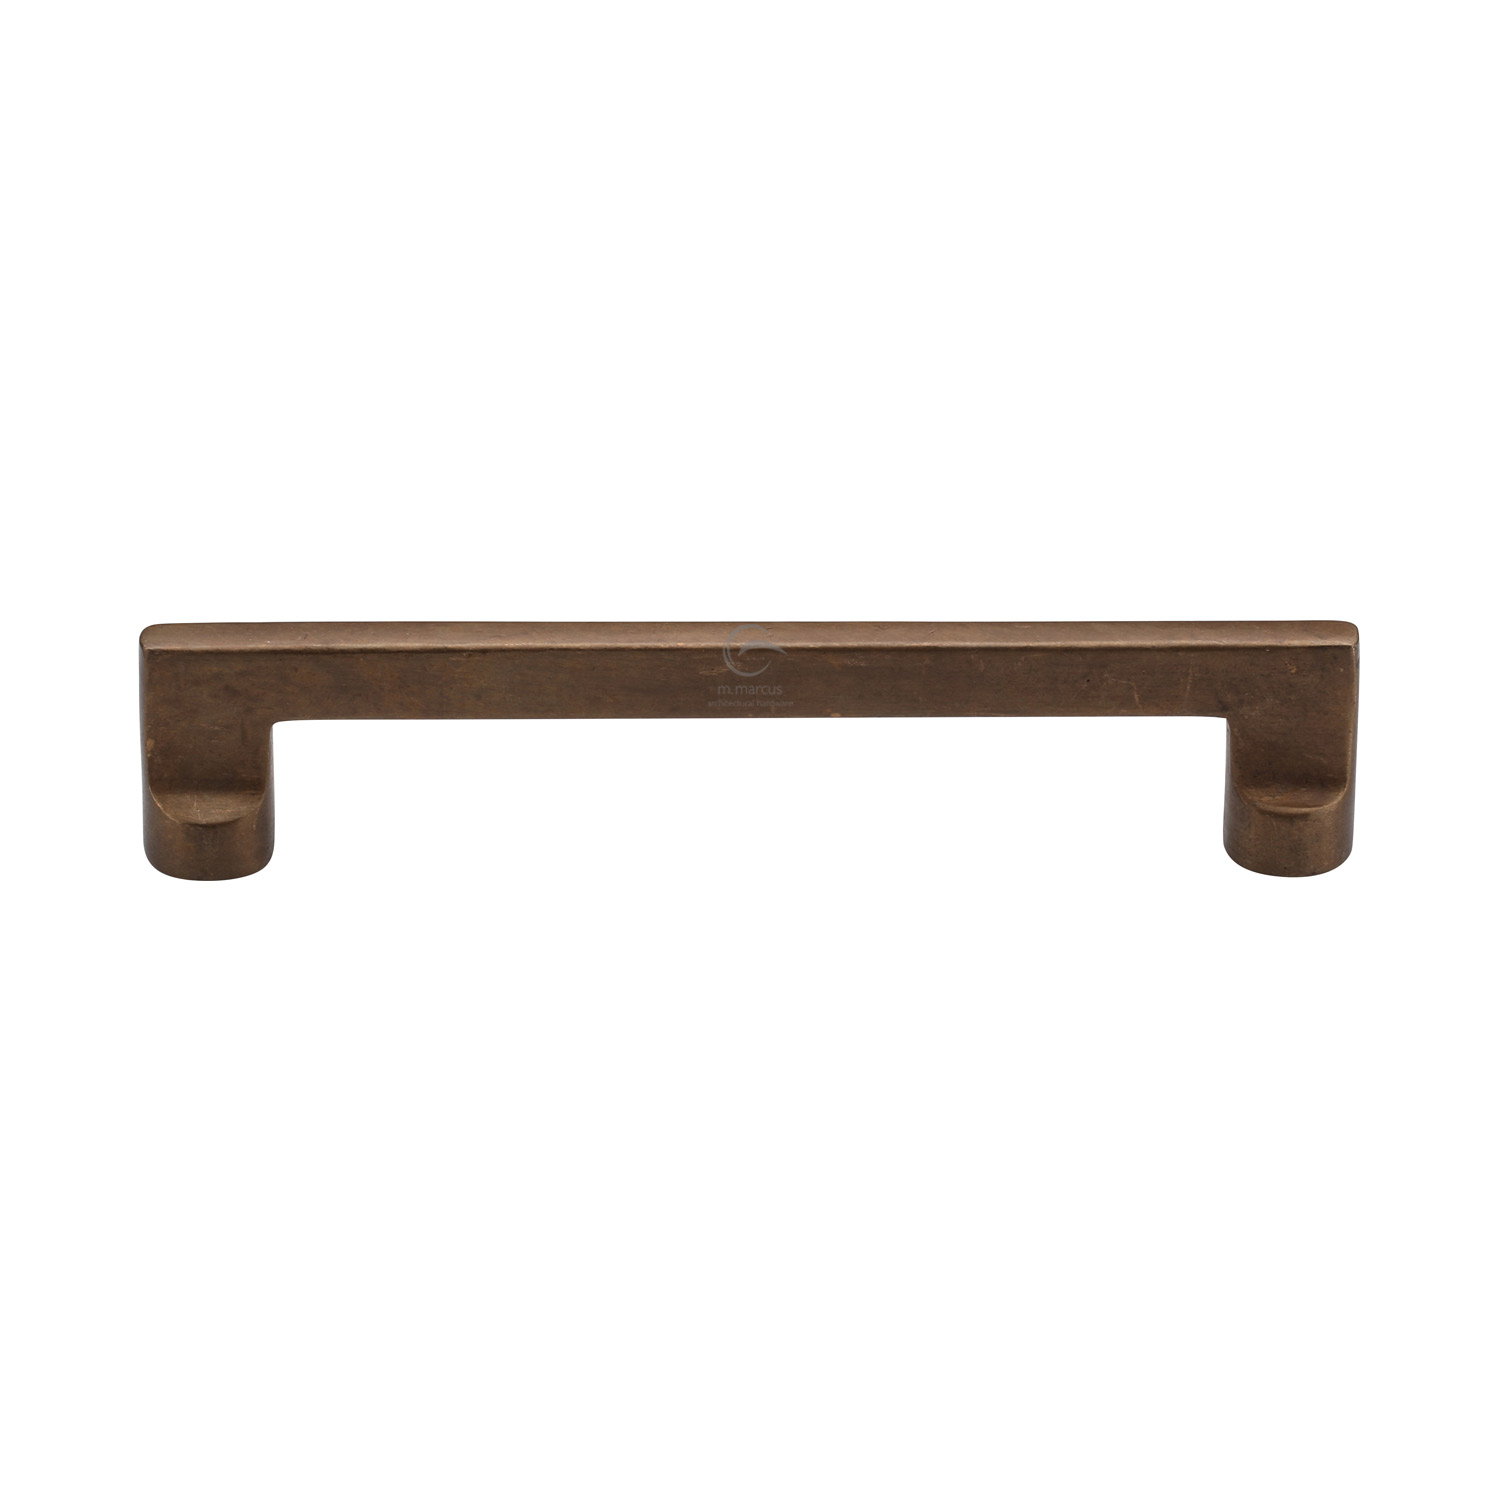 Bronze Rustic Cabinet Pull Design 160mm c/c